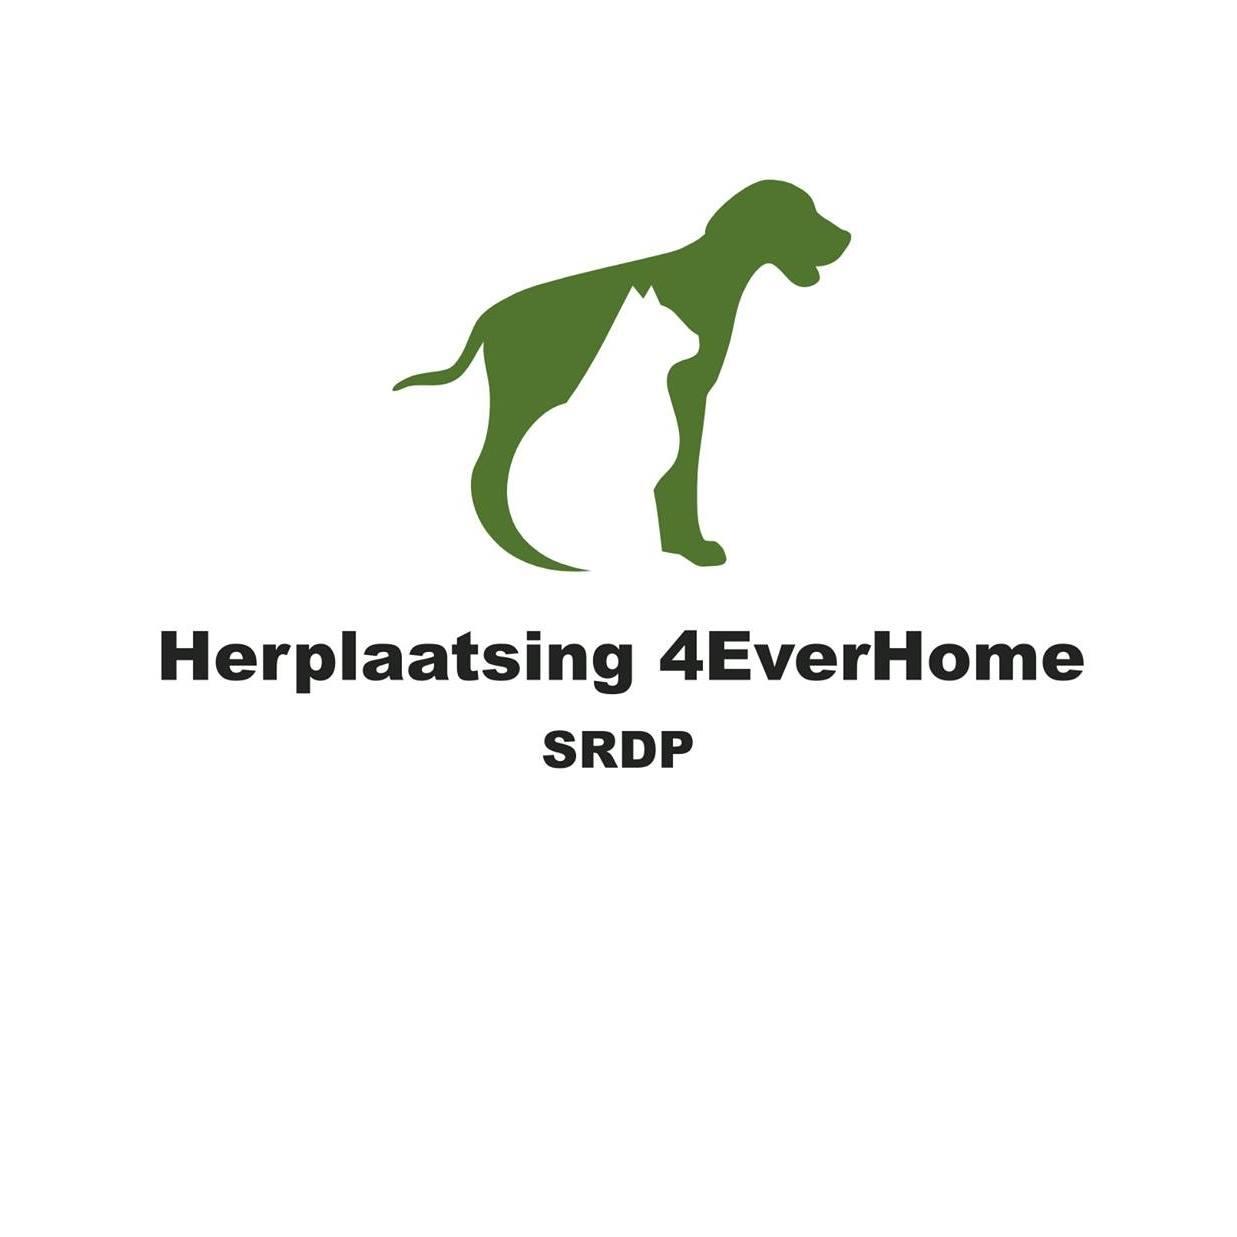 HERPLAATSING 4 EVER HOME (SRDP)